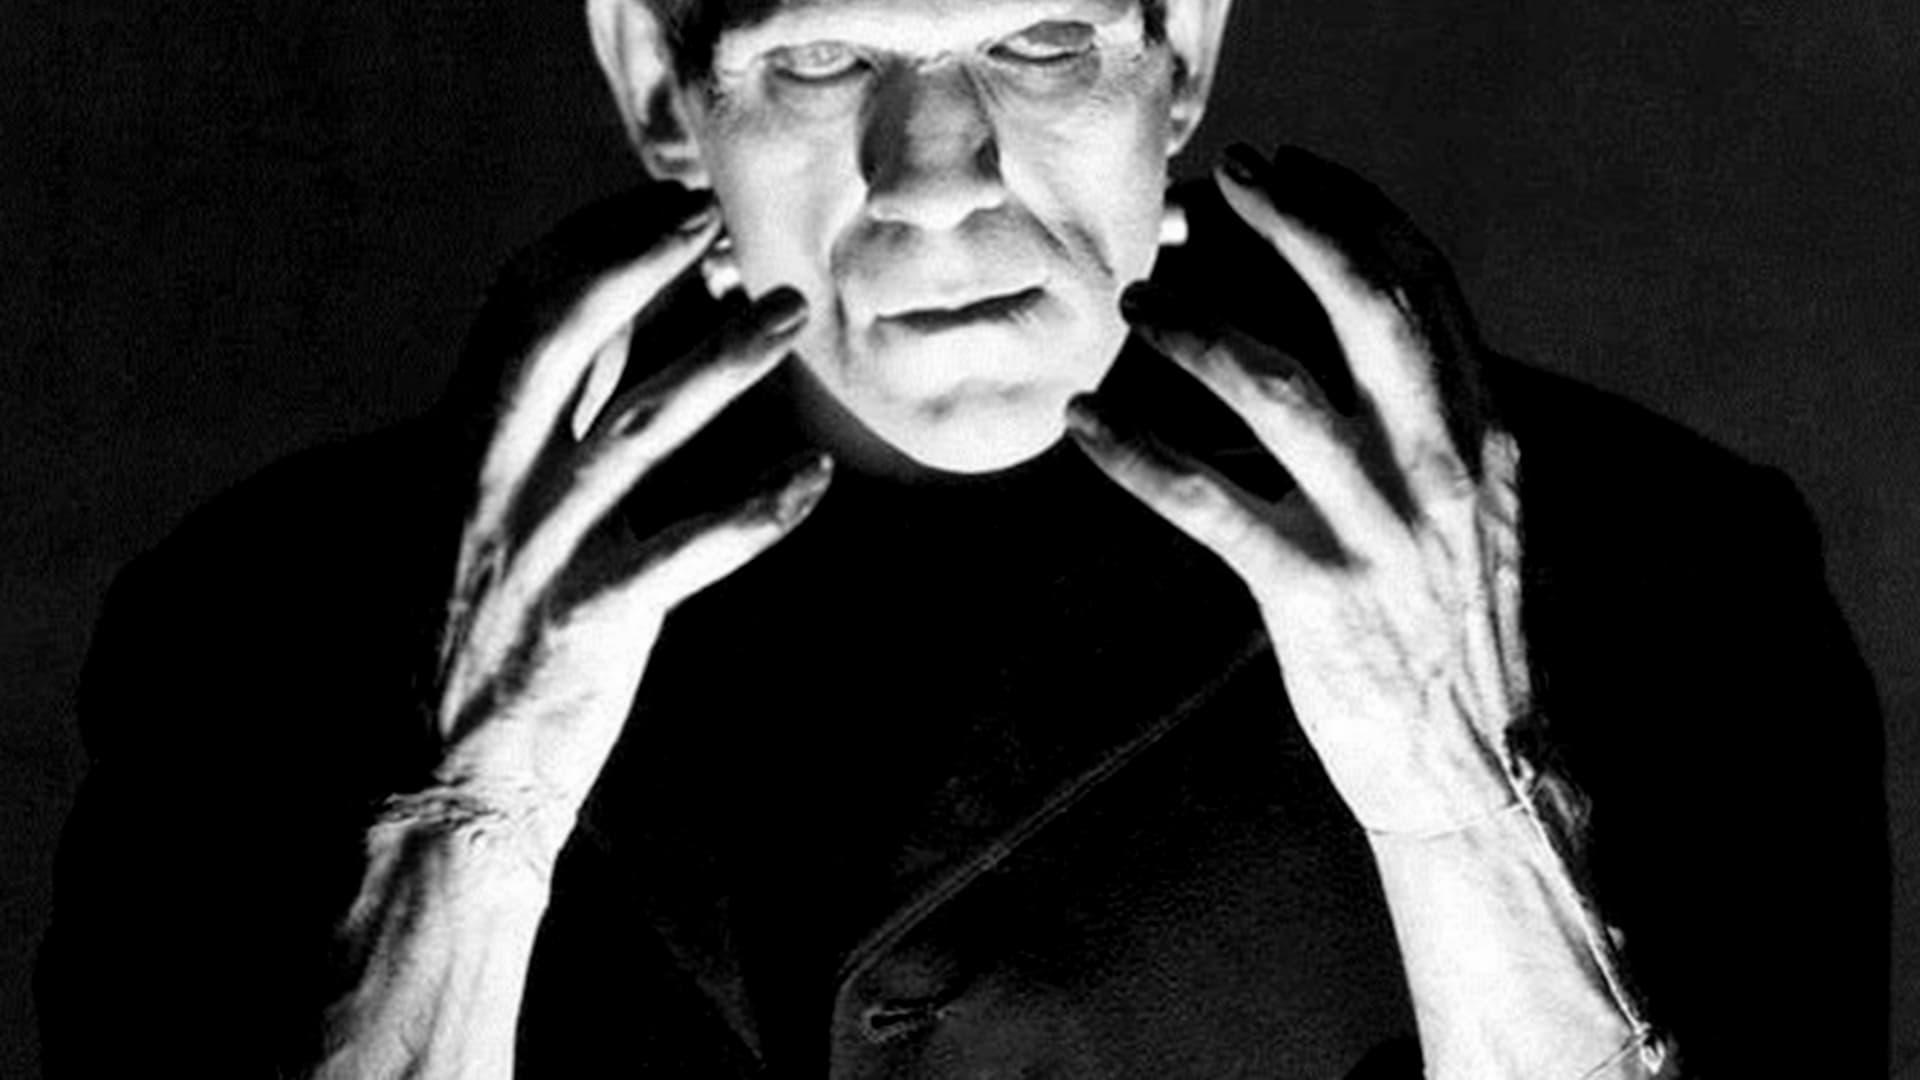 The Strange Life of Dr. Frankenstein backdrop